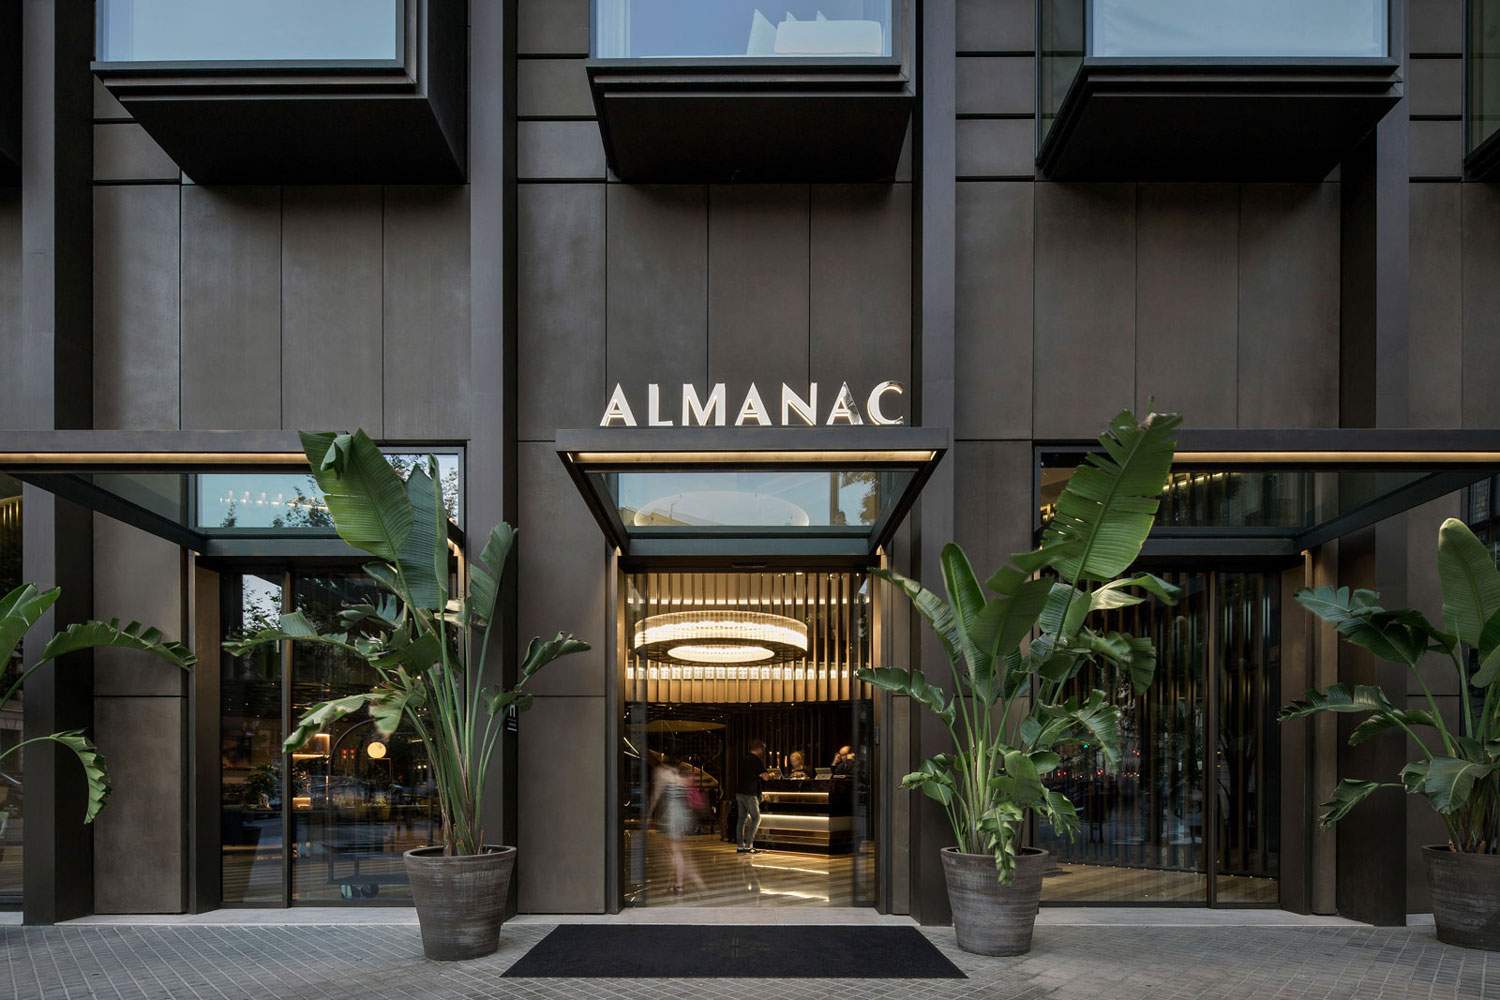 Hotel boutique Almanac Barcelona